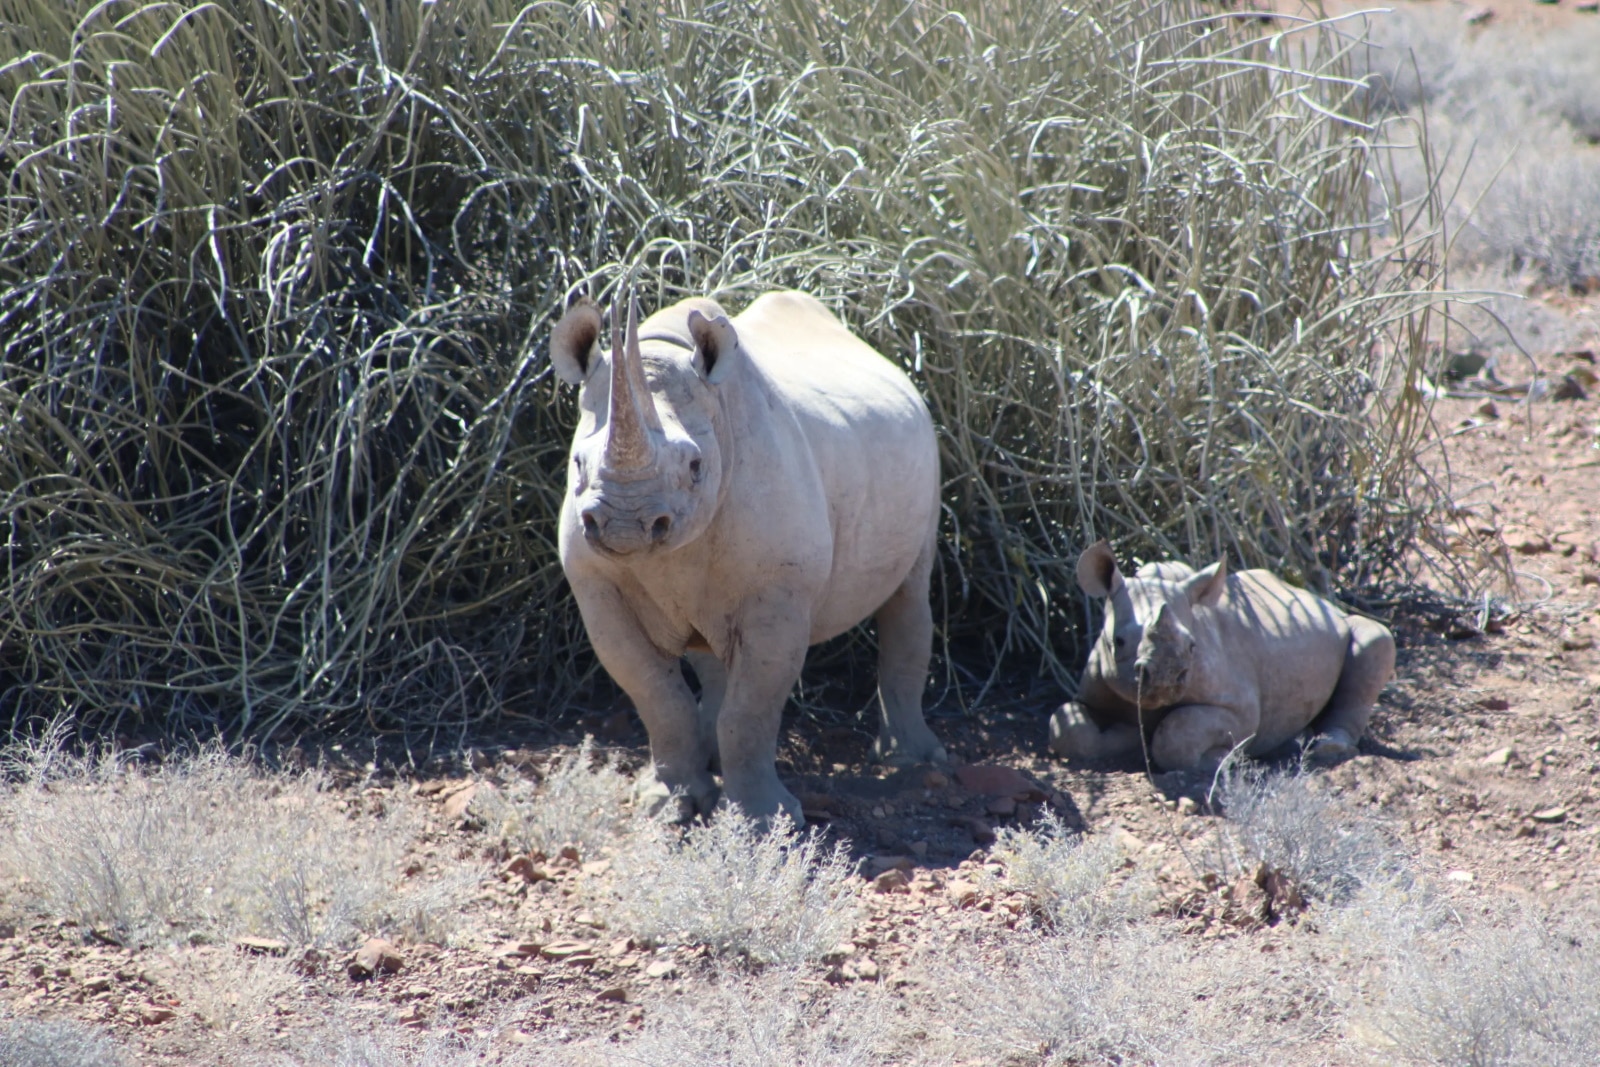 Desert rhino tracking in Damaraland